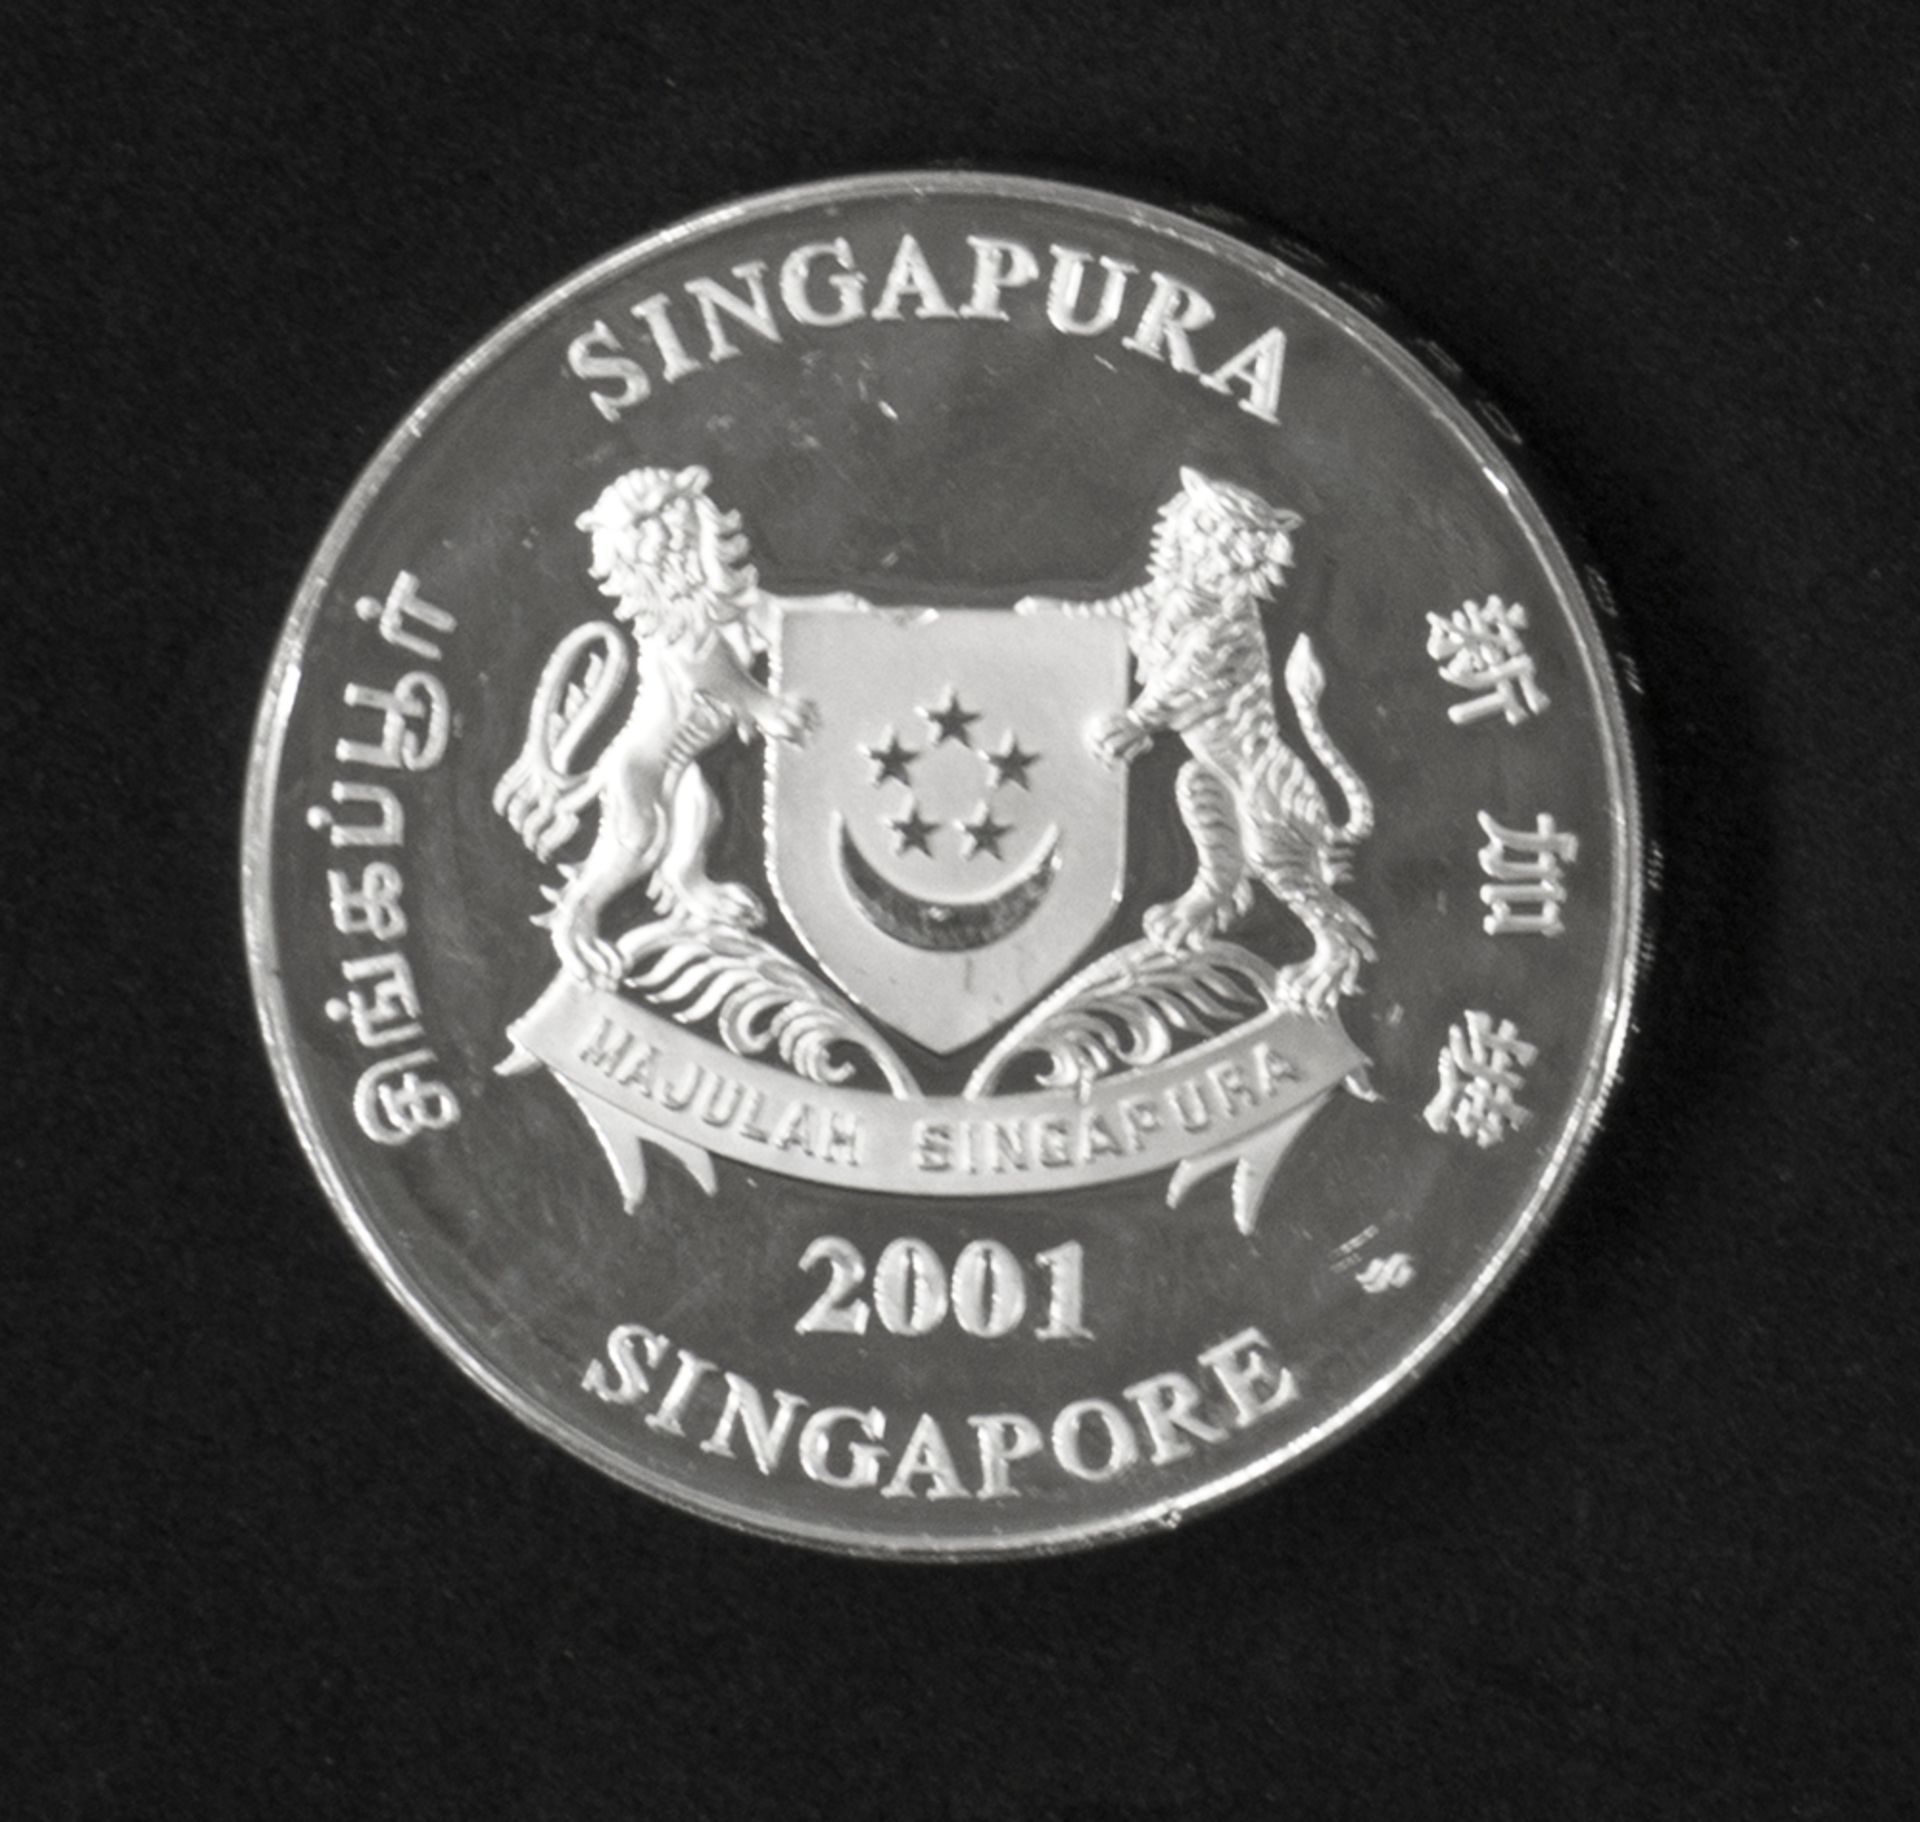 Singapur 2001, 10 Dollar - Silbermünze "Jahr der Schlange". Silber 999. KM 180. Erhaltung: PP. - Bild 2 aus 2